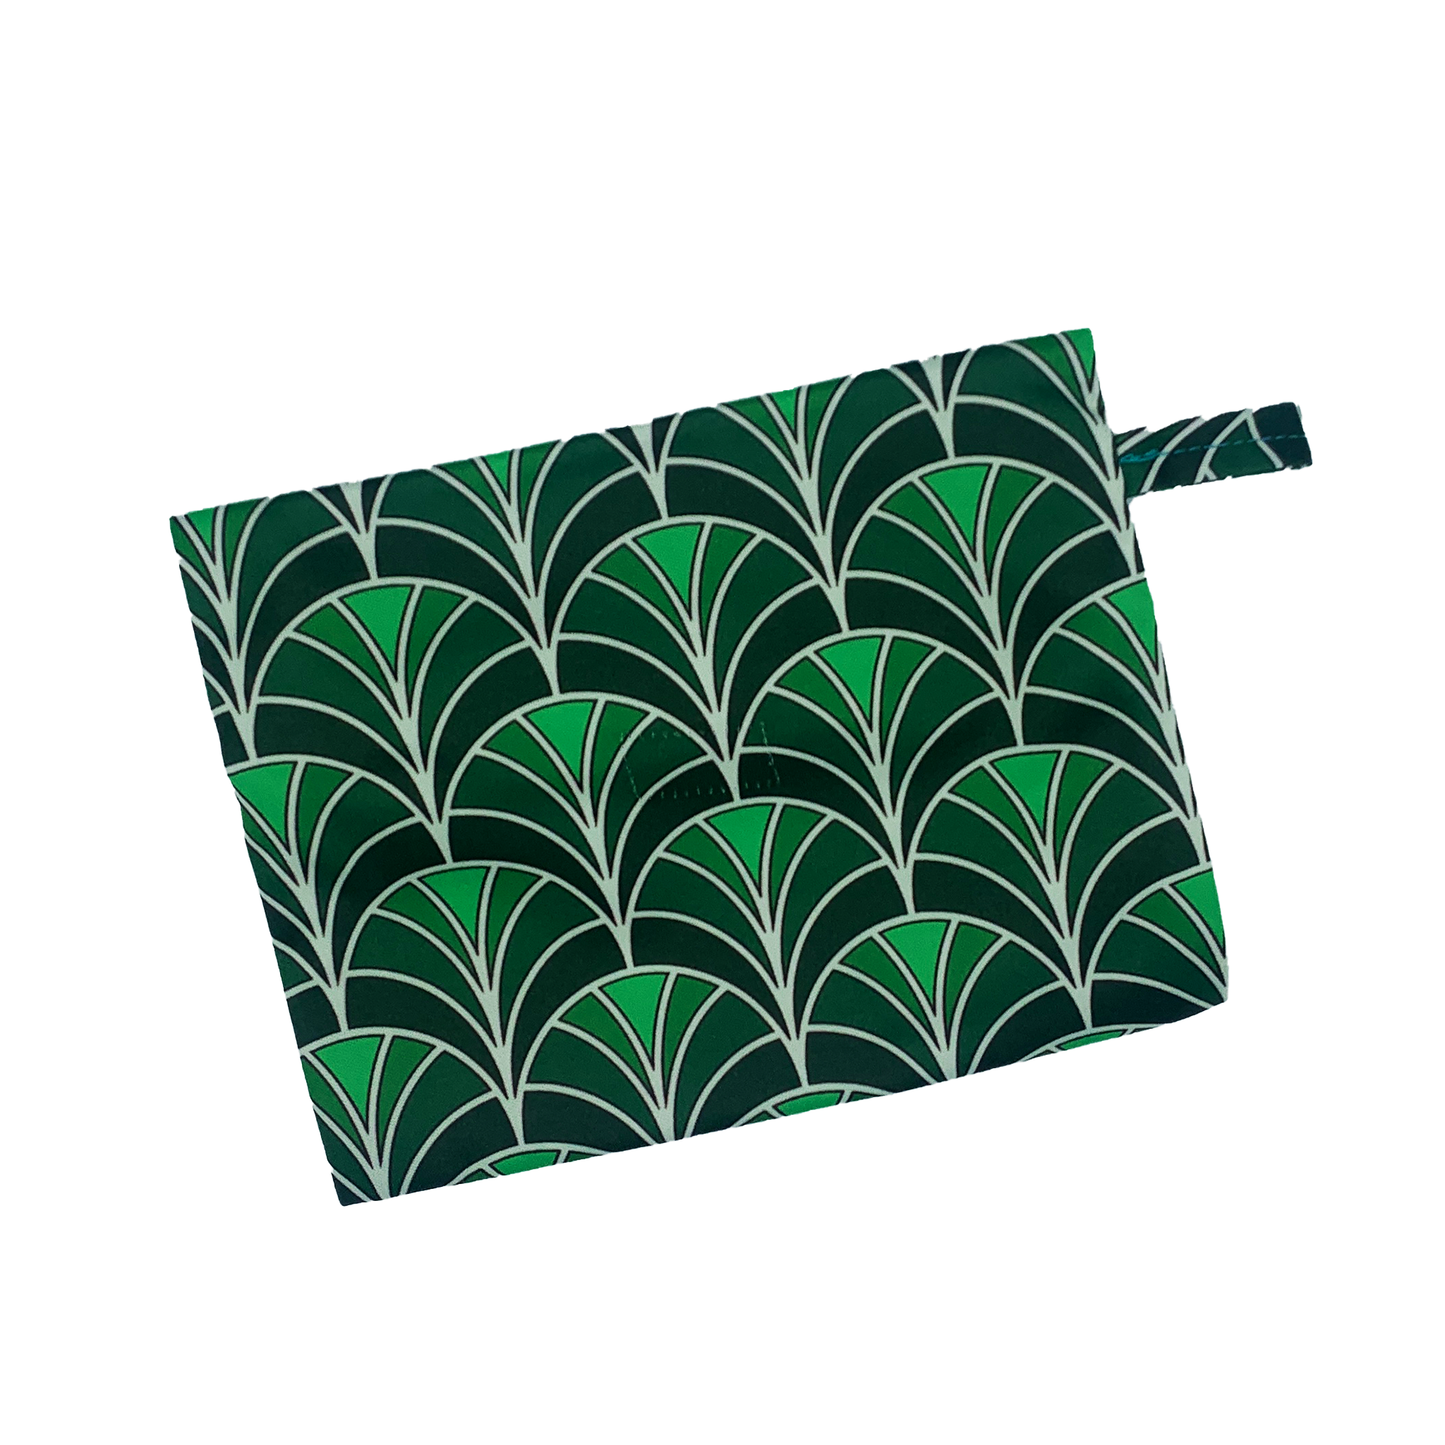 Pochette imperméable de transport design vert à tirette pour ranger tes serviettes hygiéniques, cups ou culottes menstruelles - Pussyfy